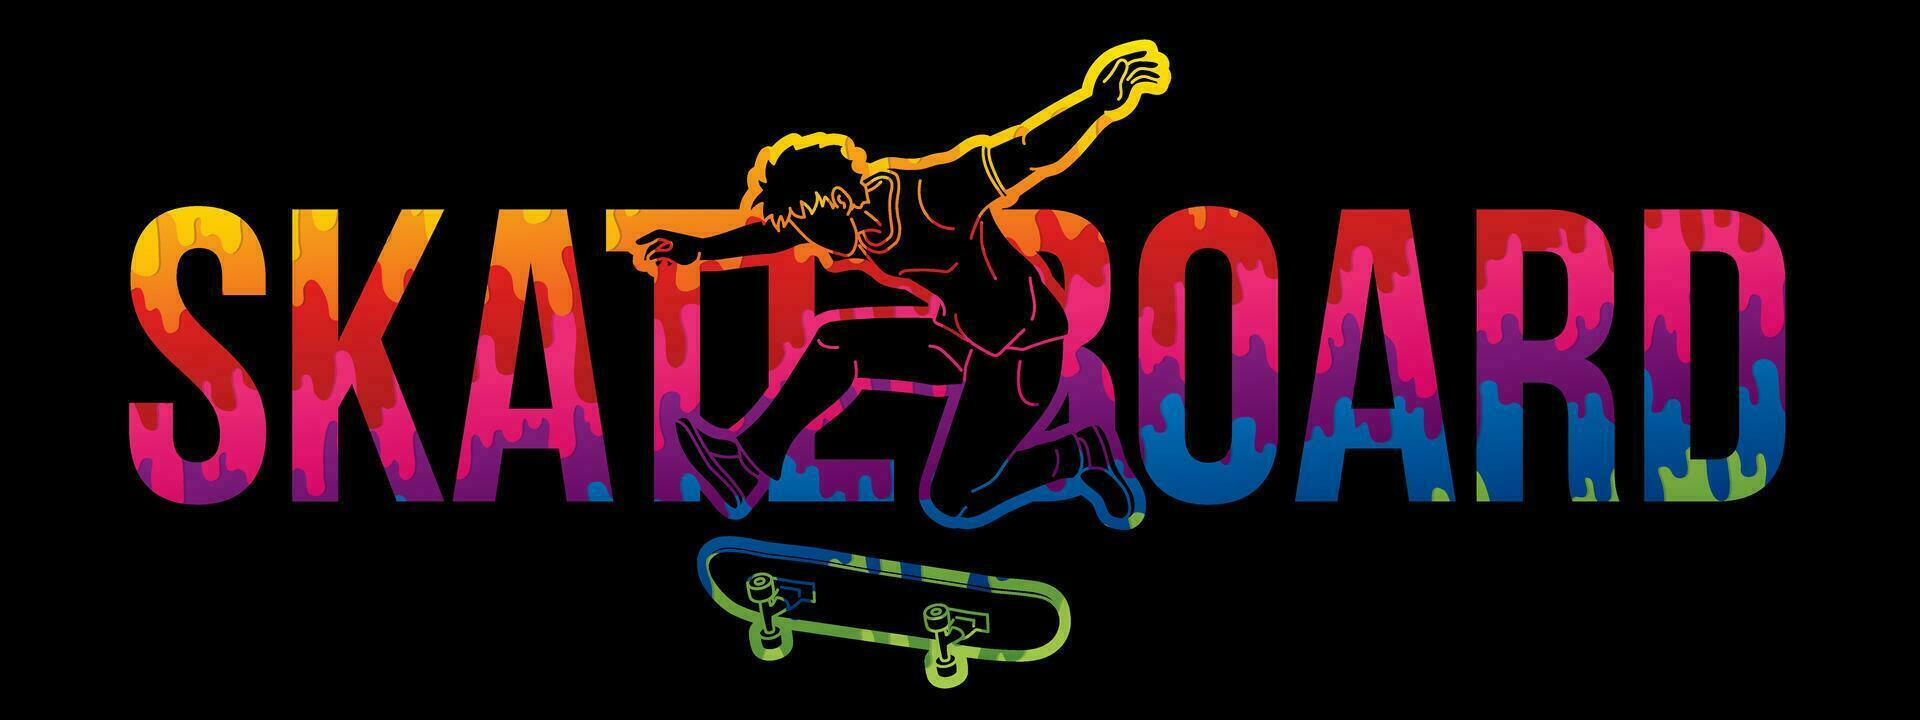 skateboard testo progettato con skateboarder azione vettore